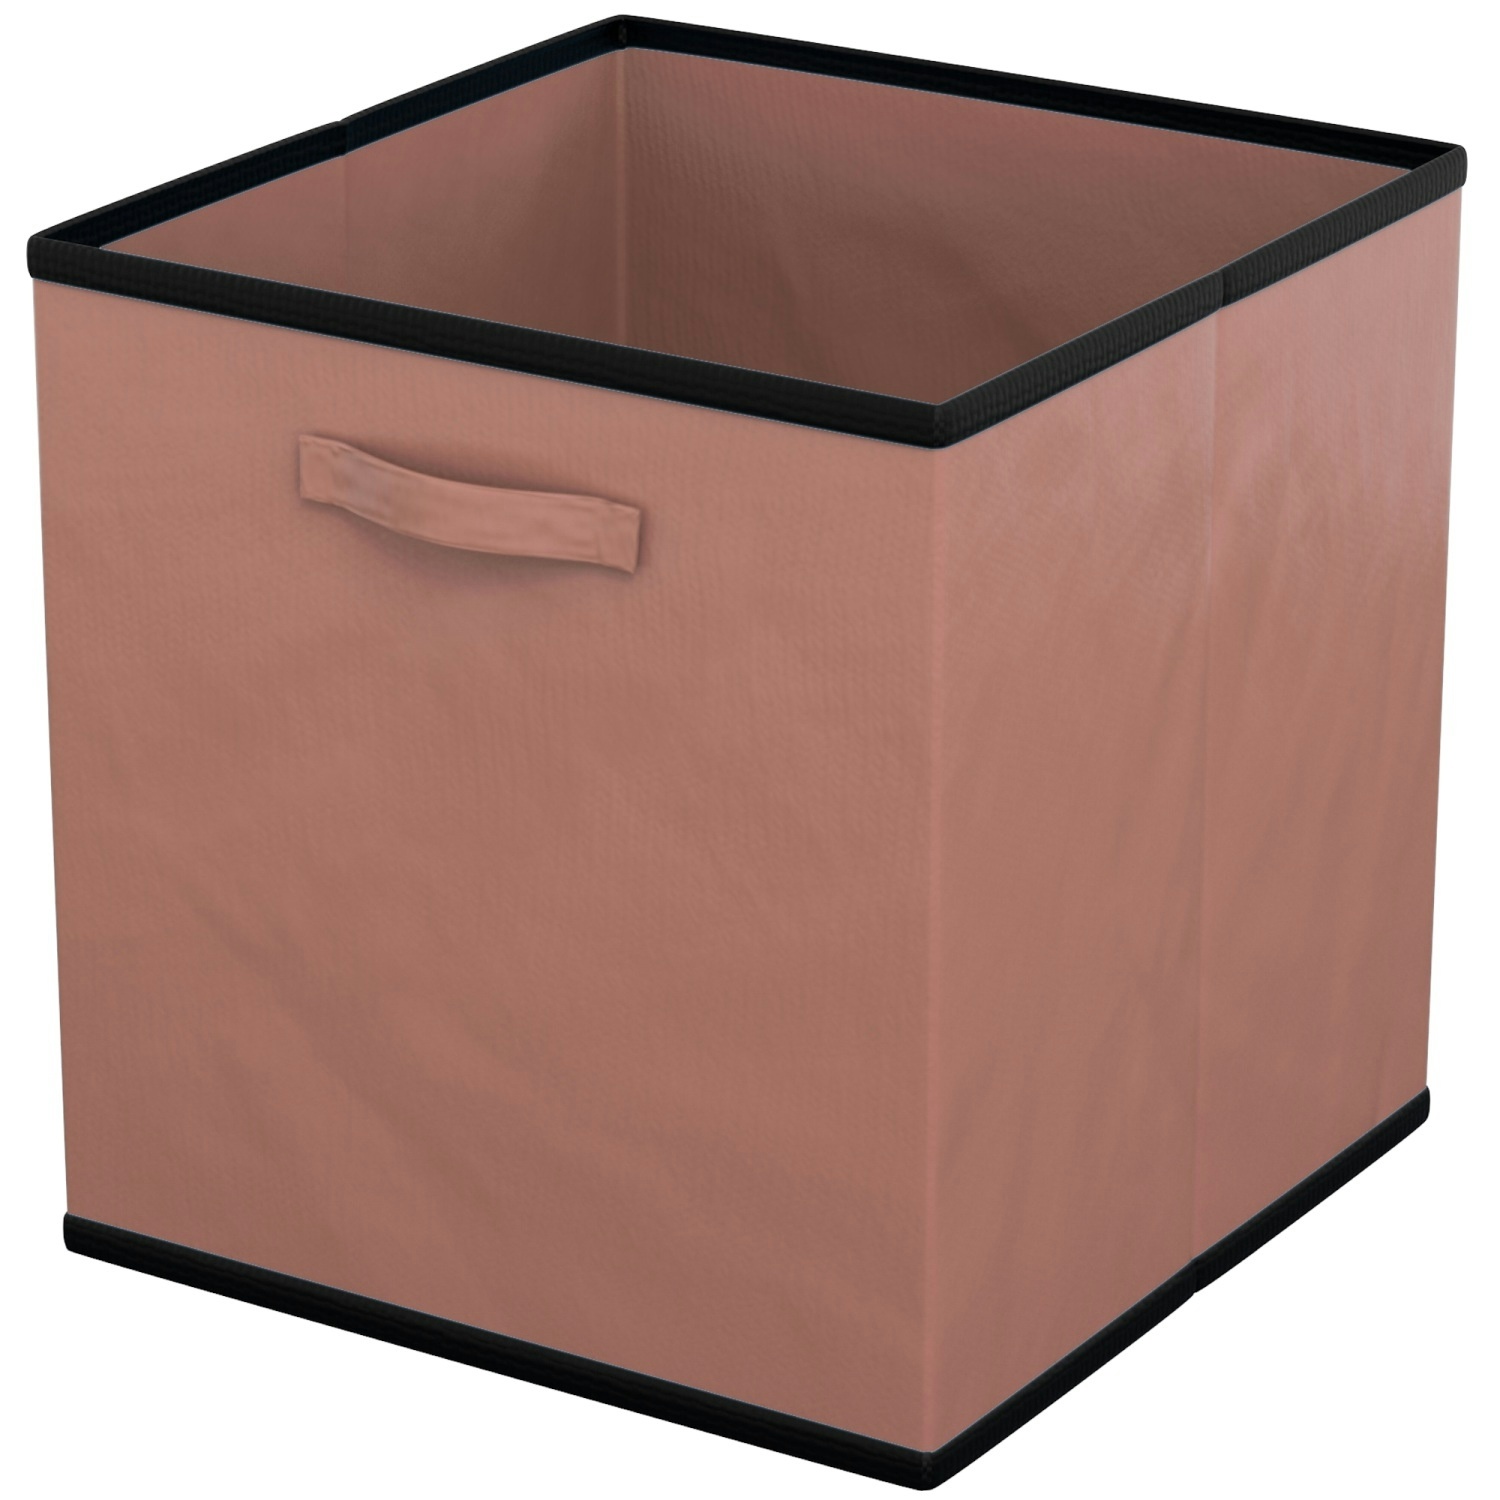 Intirilife 6x faltbare Aufbewahrungs-Stoffbox in Braun - 26.7 x 26.7 x 28 cm - Multifunktionale Sammelbox zum Kombinieren mit Schränken oder Regalen